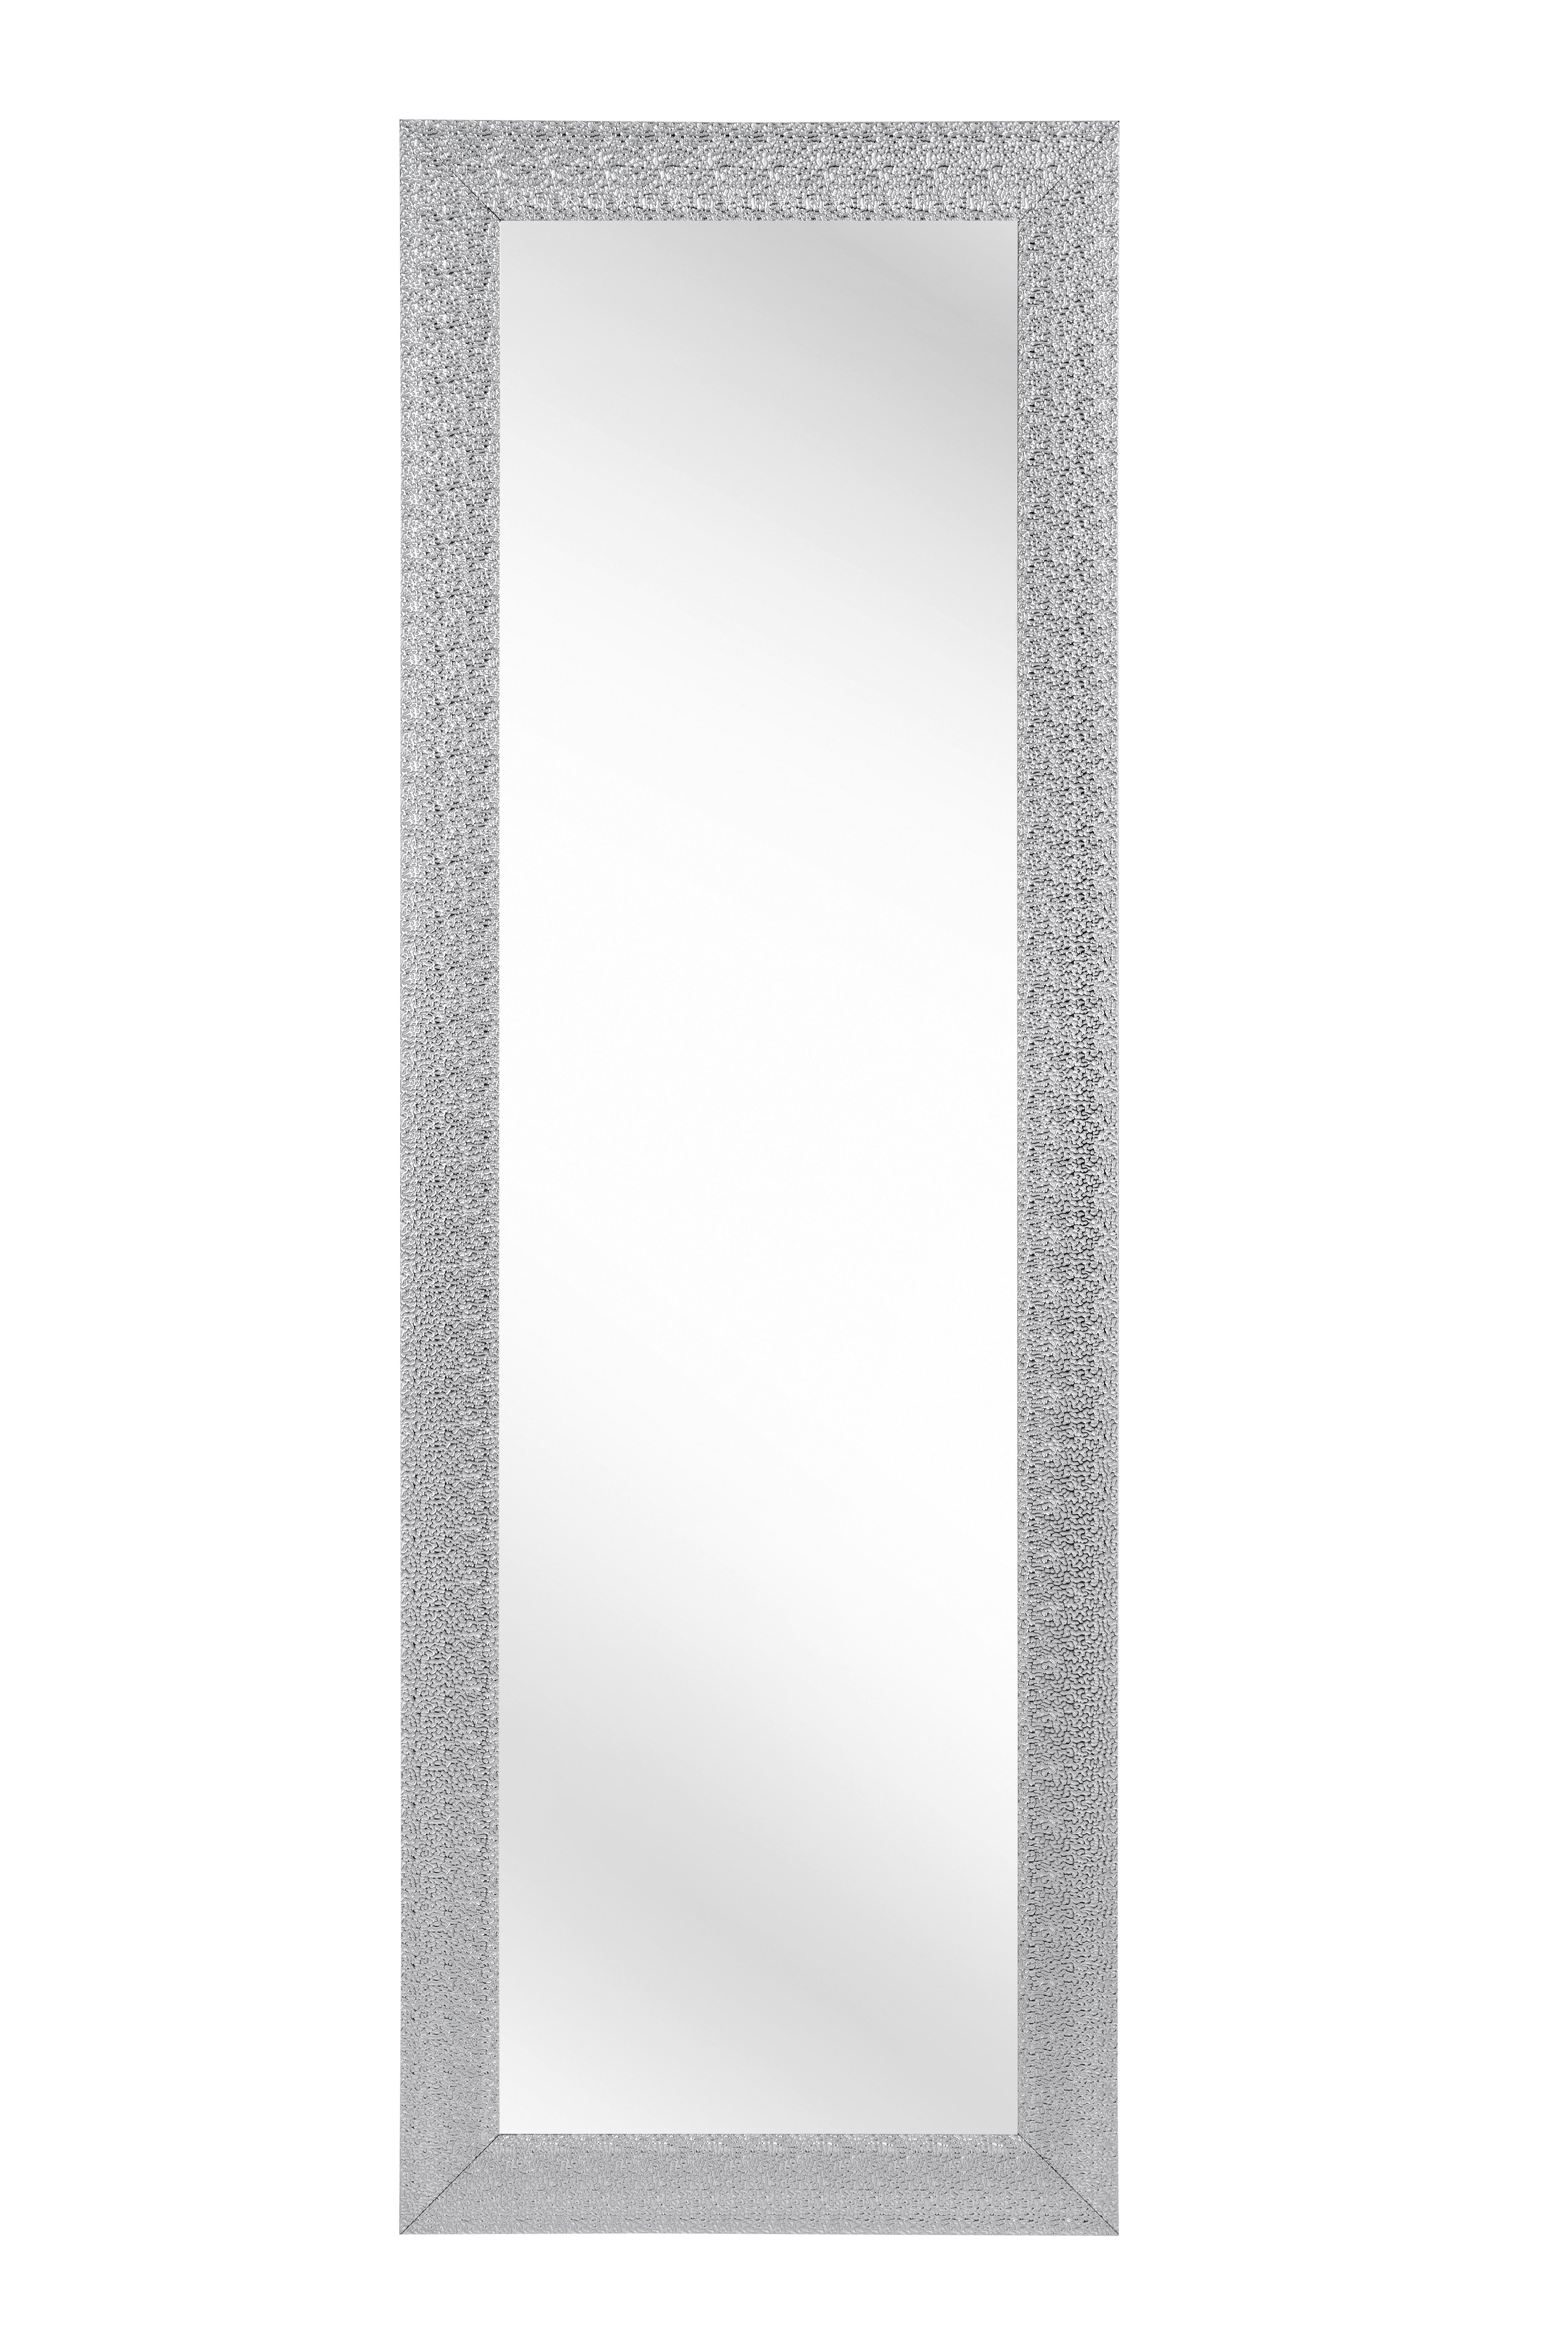 WANDSPIEGEL Silberfarben  - Silberfarben, LIFESTYLE, Glas/Kunststoff (50/150/2cm) - Carryhome